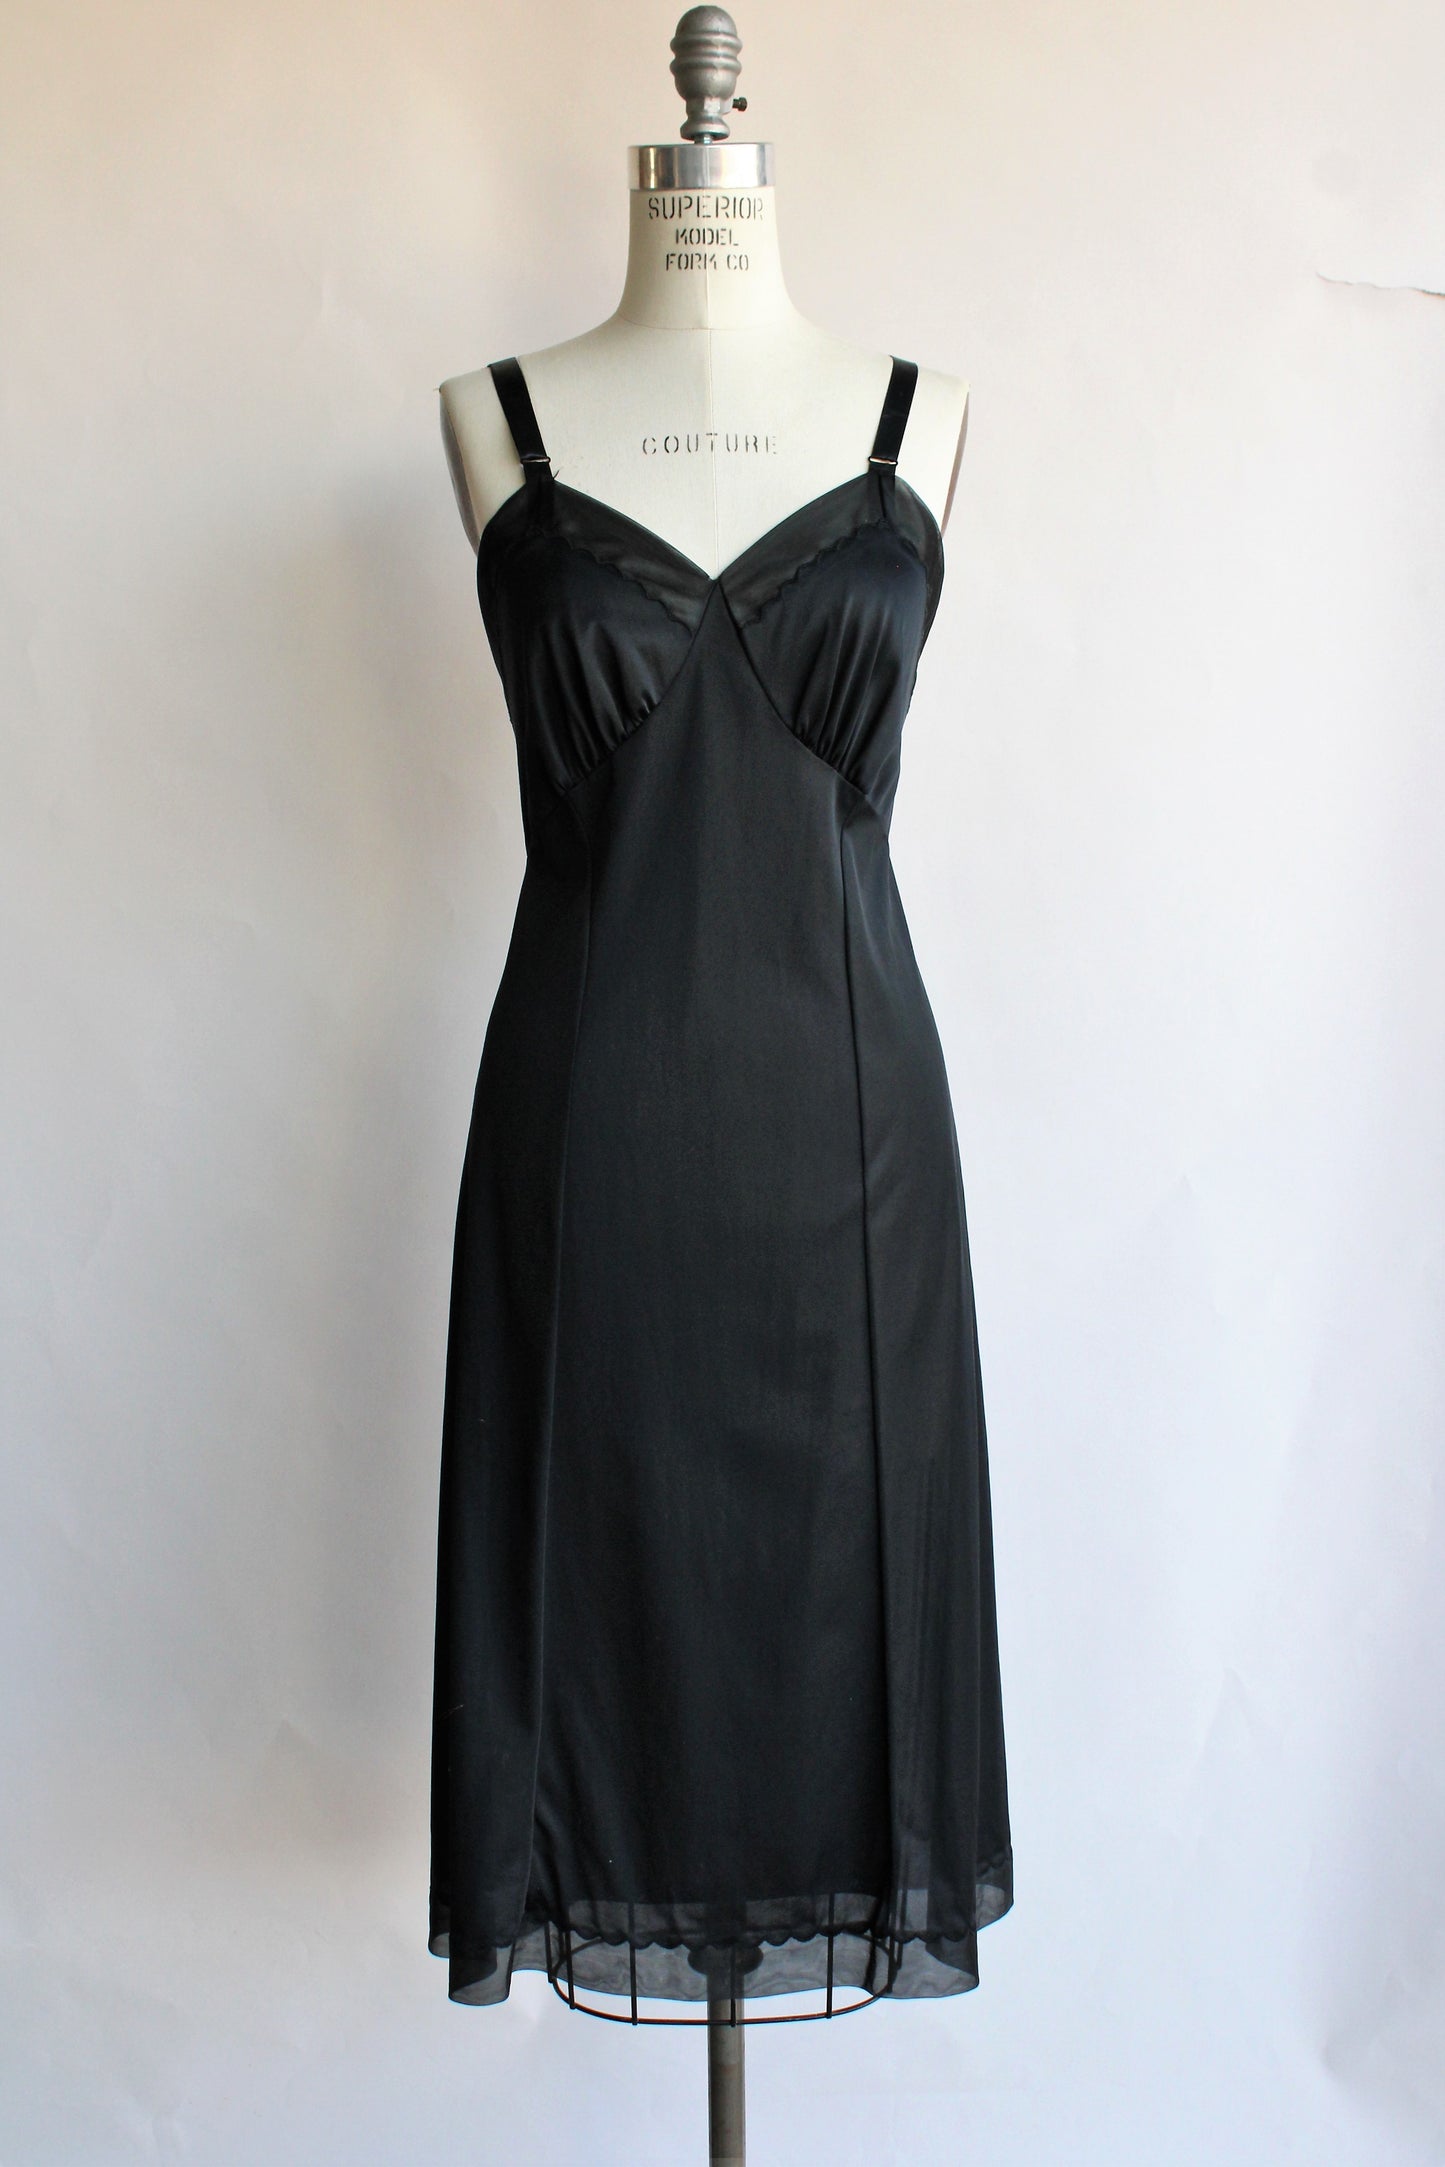 Vintage 1960s Black Full Slip by Penneys, Adonna